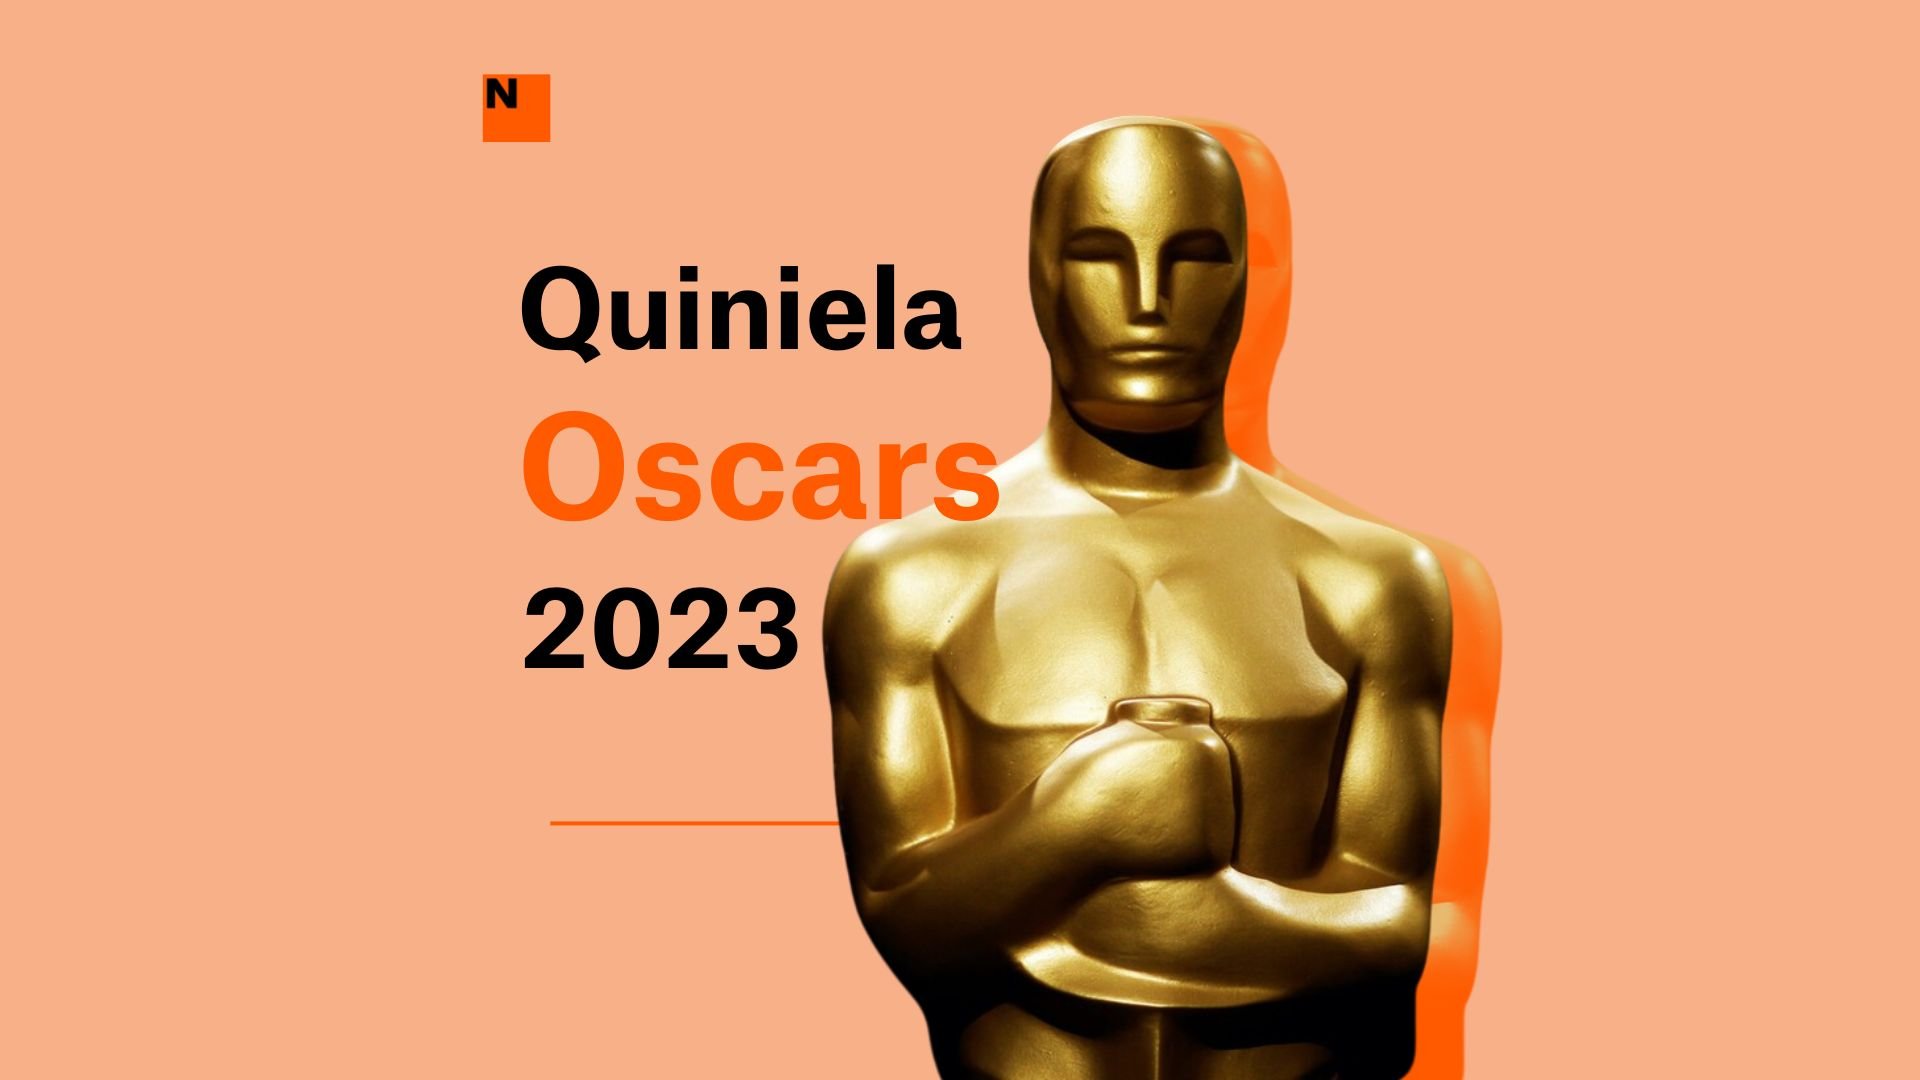 Haz la quiniela de los Oscars 2023: ¿quiénes serán los ganadores de los premios?